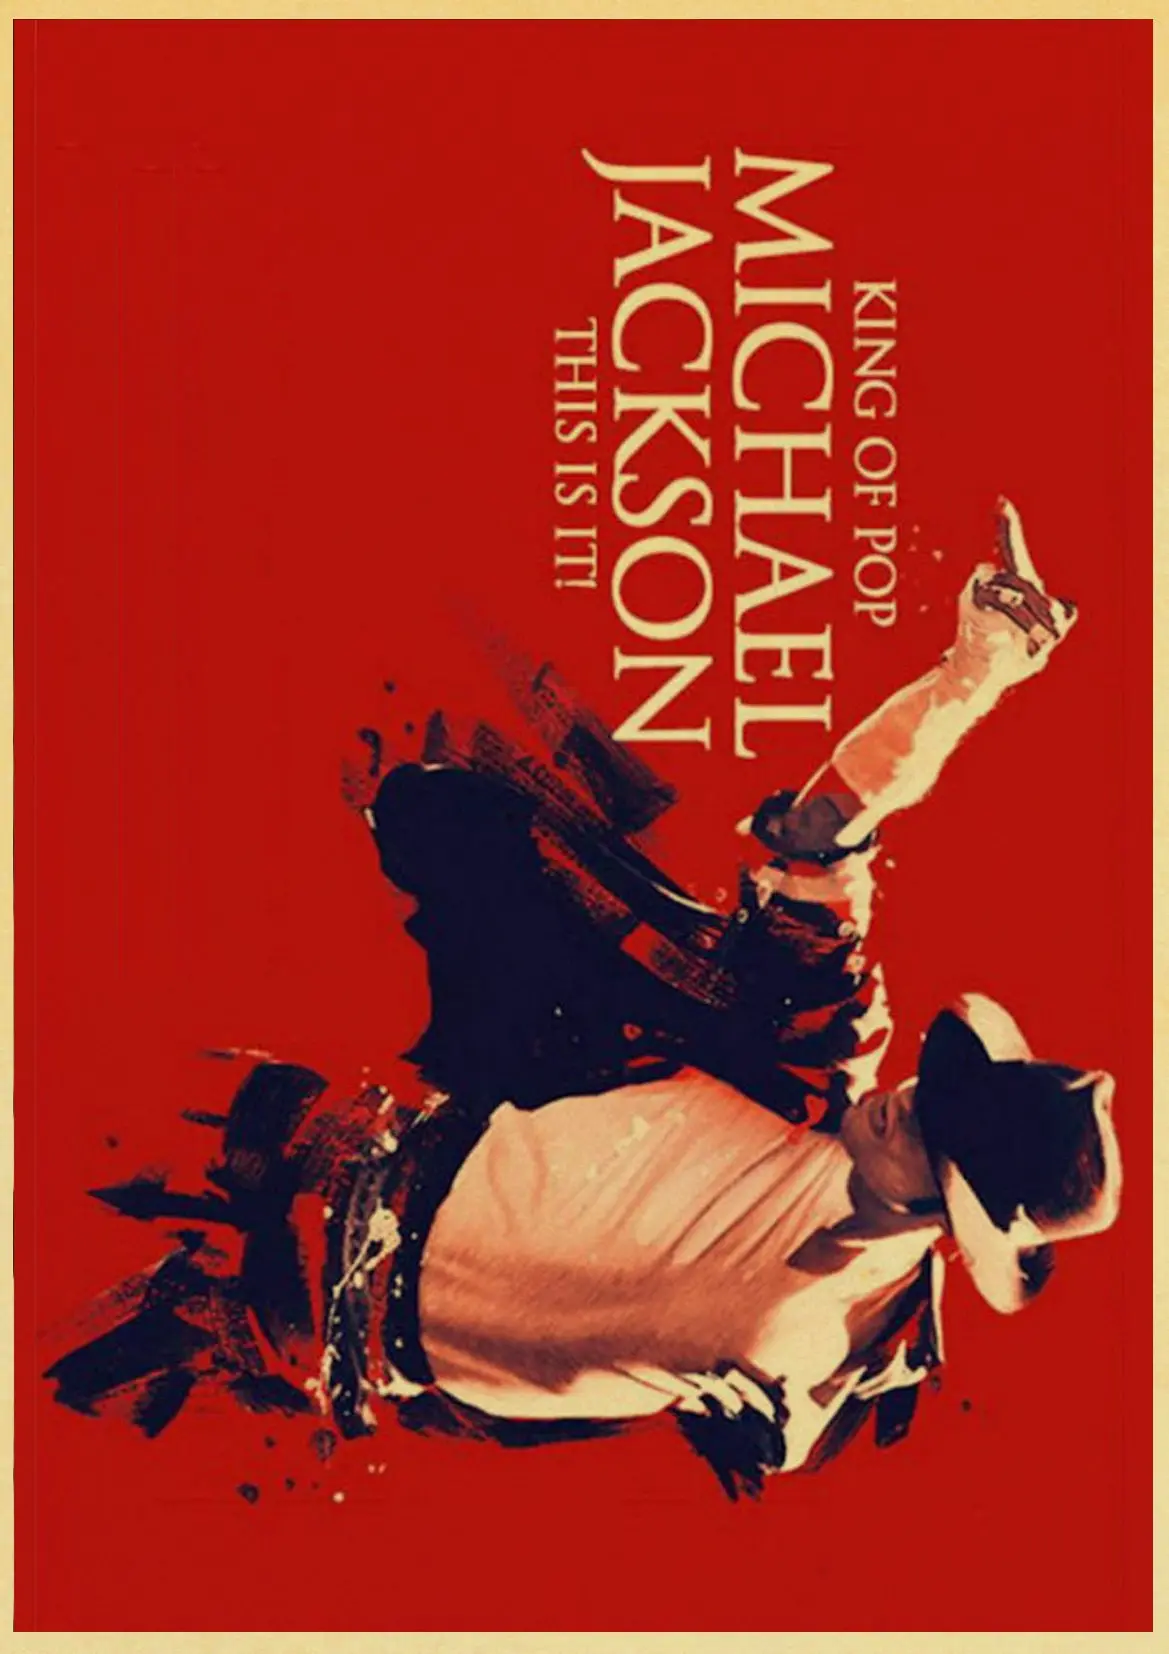 Классический певец и танцор Майкл Джексон художественная Живопись Печать на крафтовой бумаге Ретро плакат Настенная картина украшение дома Настенный декор